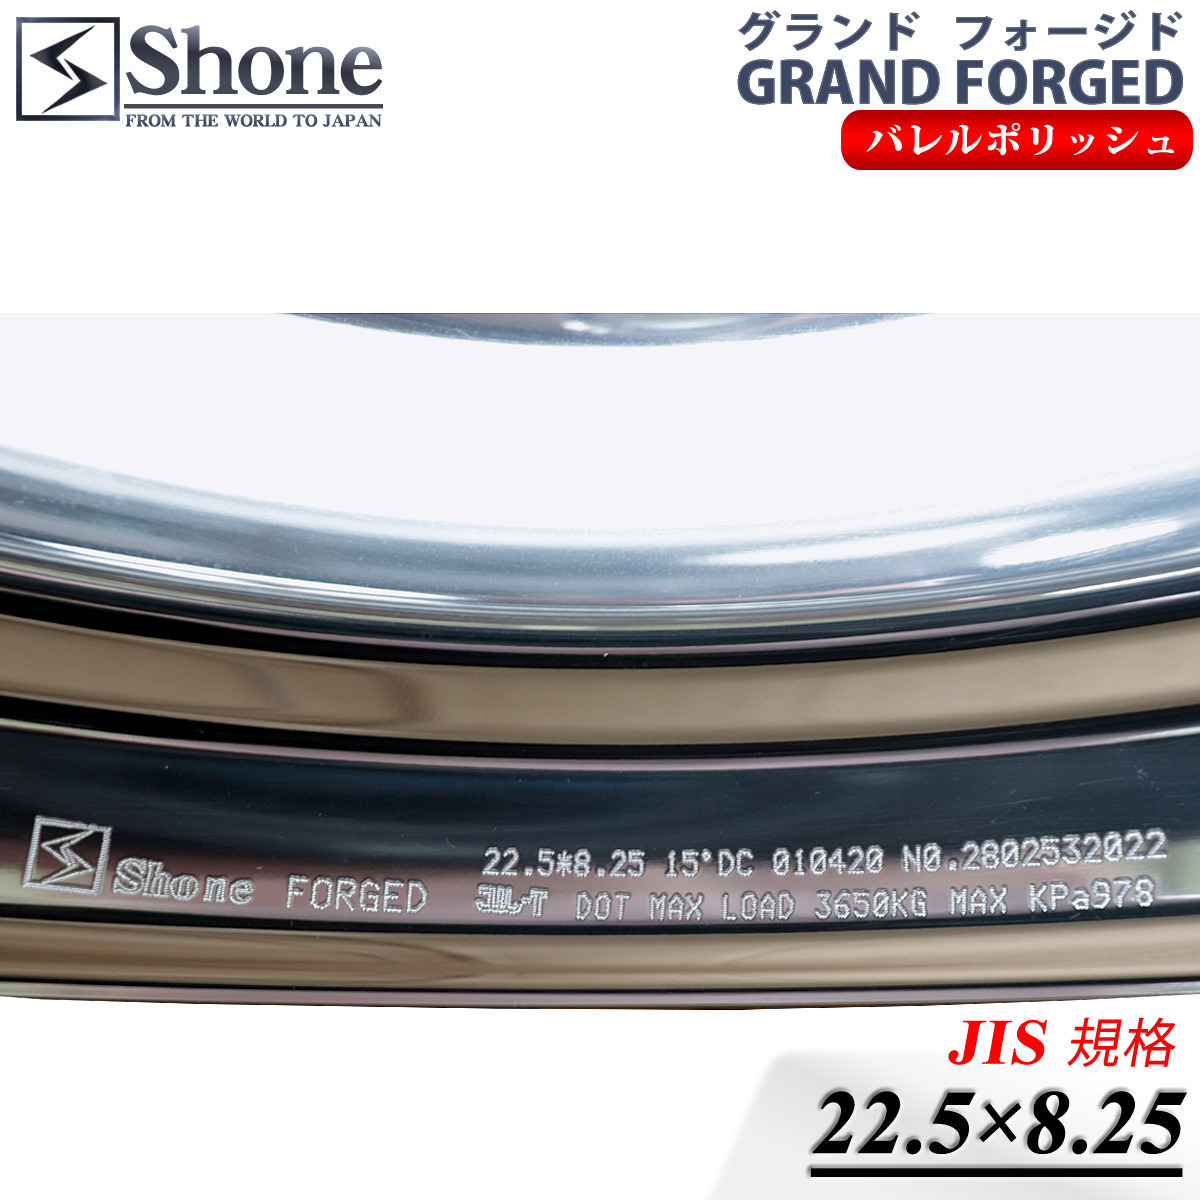  новый товар 2 шт цена фирма адресован бесплатная доставка 22.5×8.25 8 дыра JIS стандарт +165 SHONE Grand forged premium 2 кованый aluminium barrel полировка NO,SH368